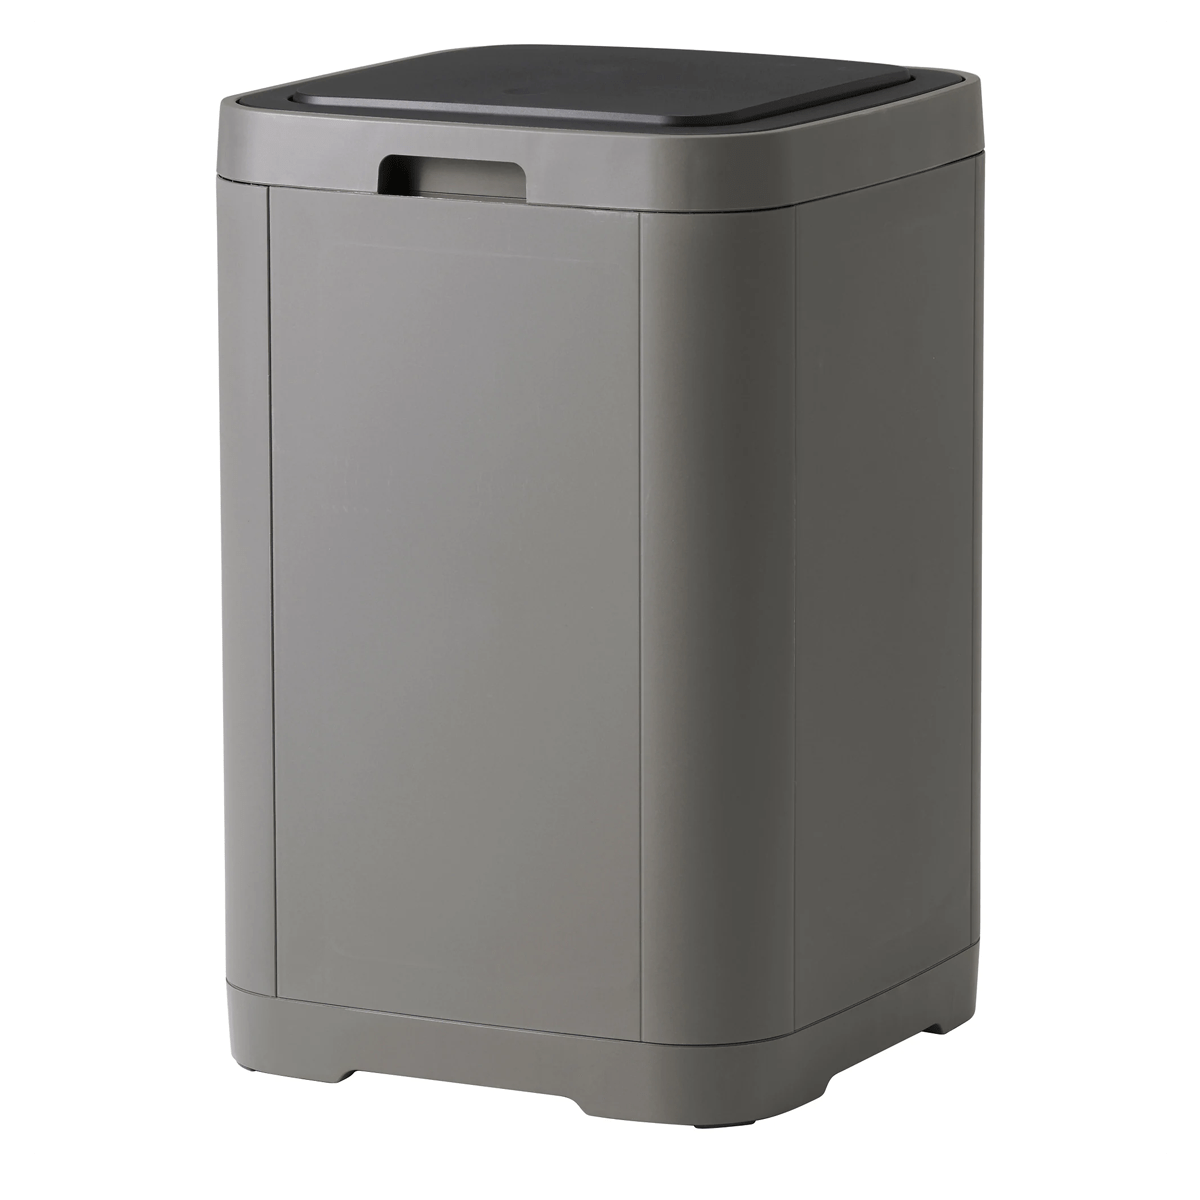 GIGANTISK Touch top bin, dark grey